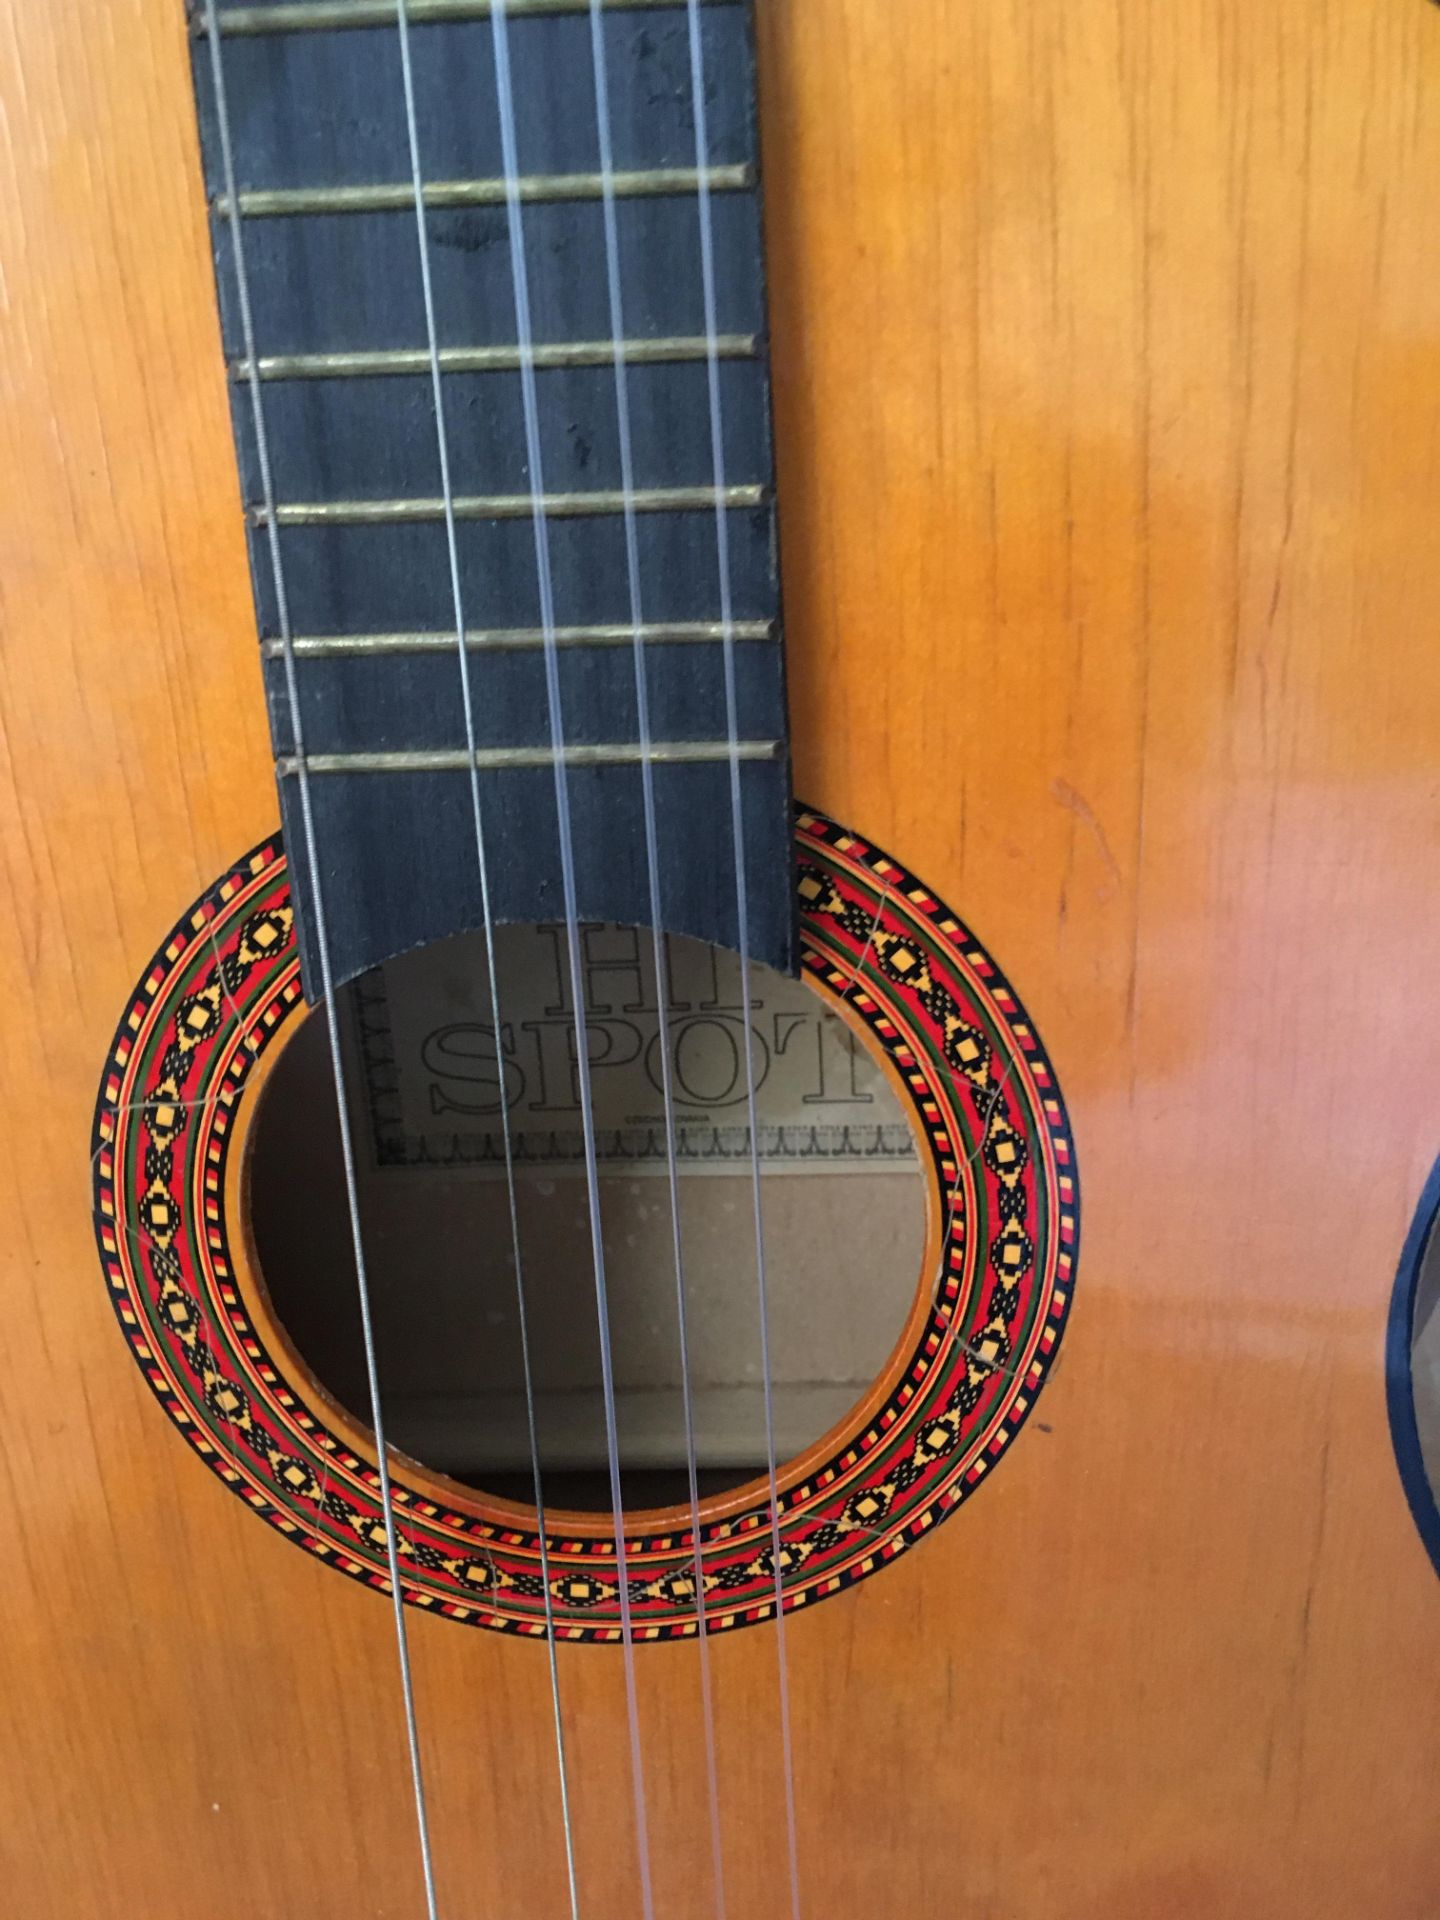 Hi Spot 6 string acoustic guitar (string missing) - Image 2 of 2